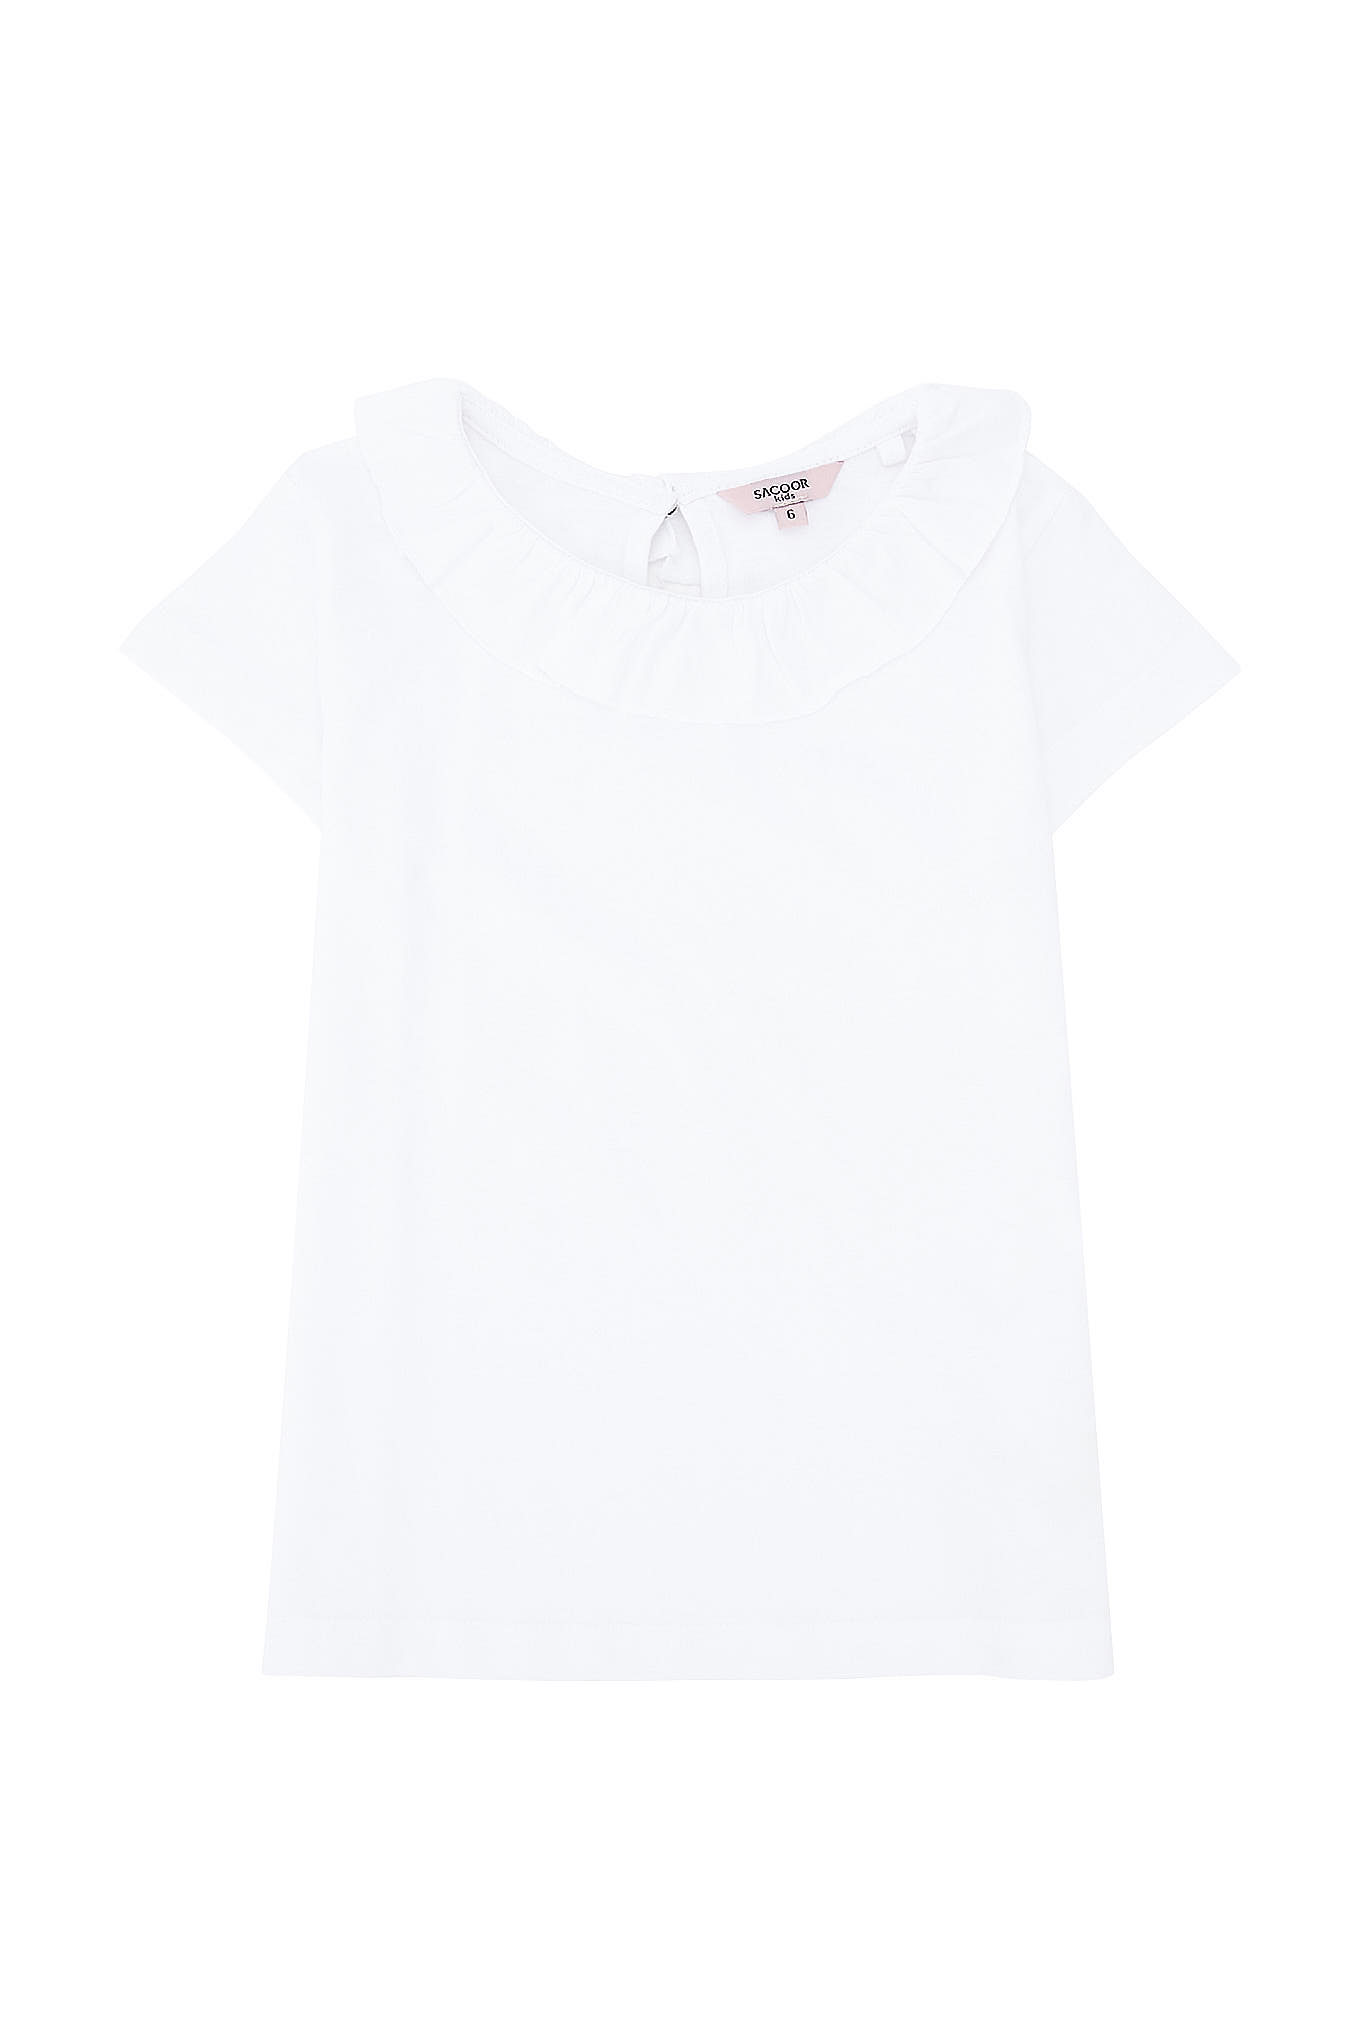 T-Shirt White Sport Girl